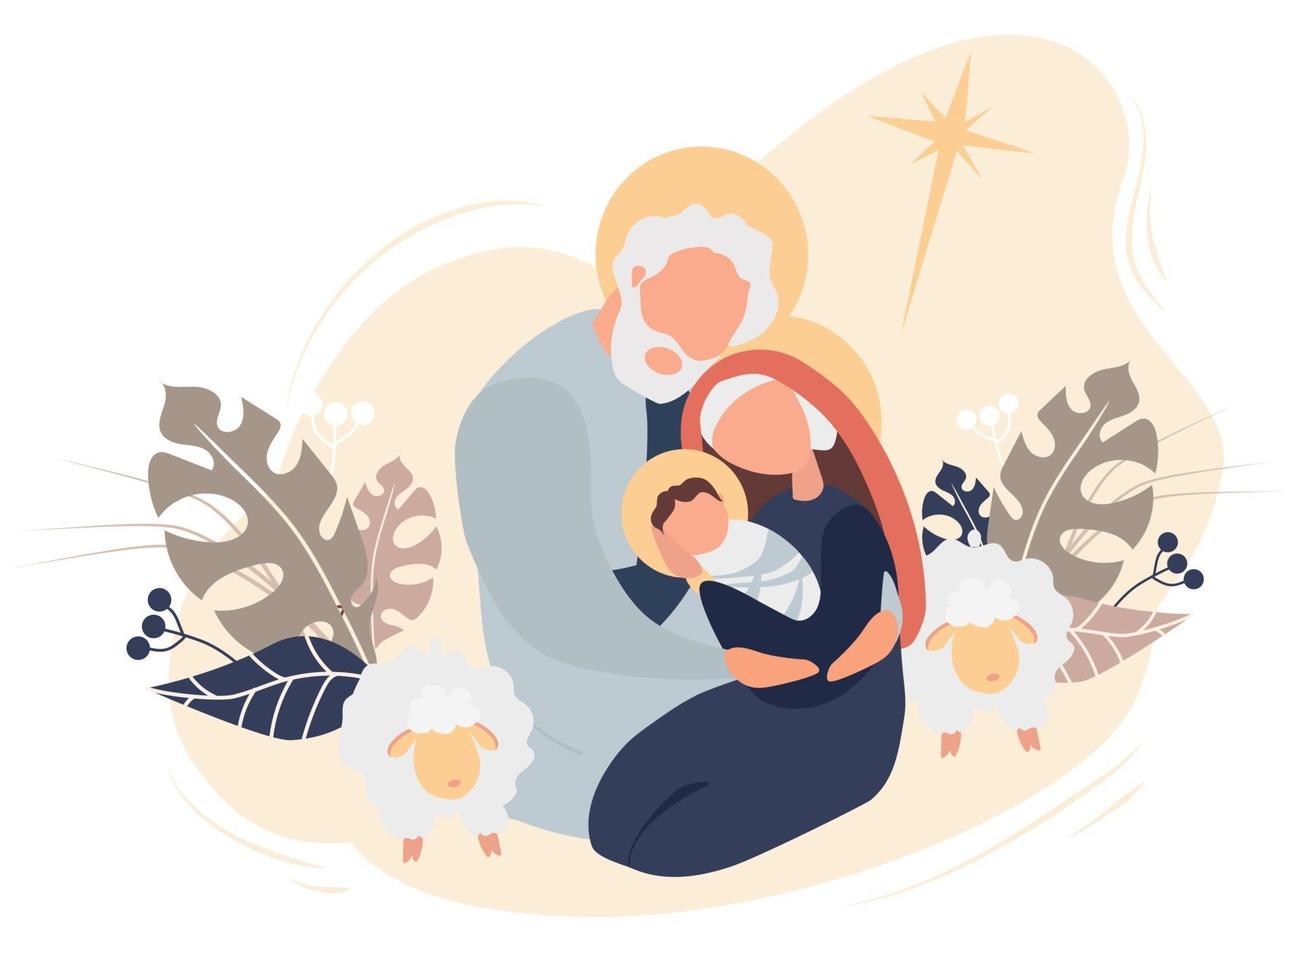 Feliz Navidad. el nacimiento del niño salvador jesucristo. virgen maría y josé sagrada familia, estrella de belén y oveja sobre un fondo rosa con hojas tropicales y decoración. ilustración vectorial vector